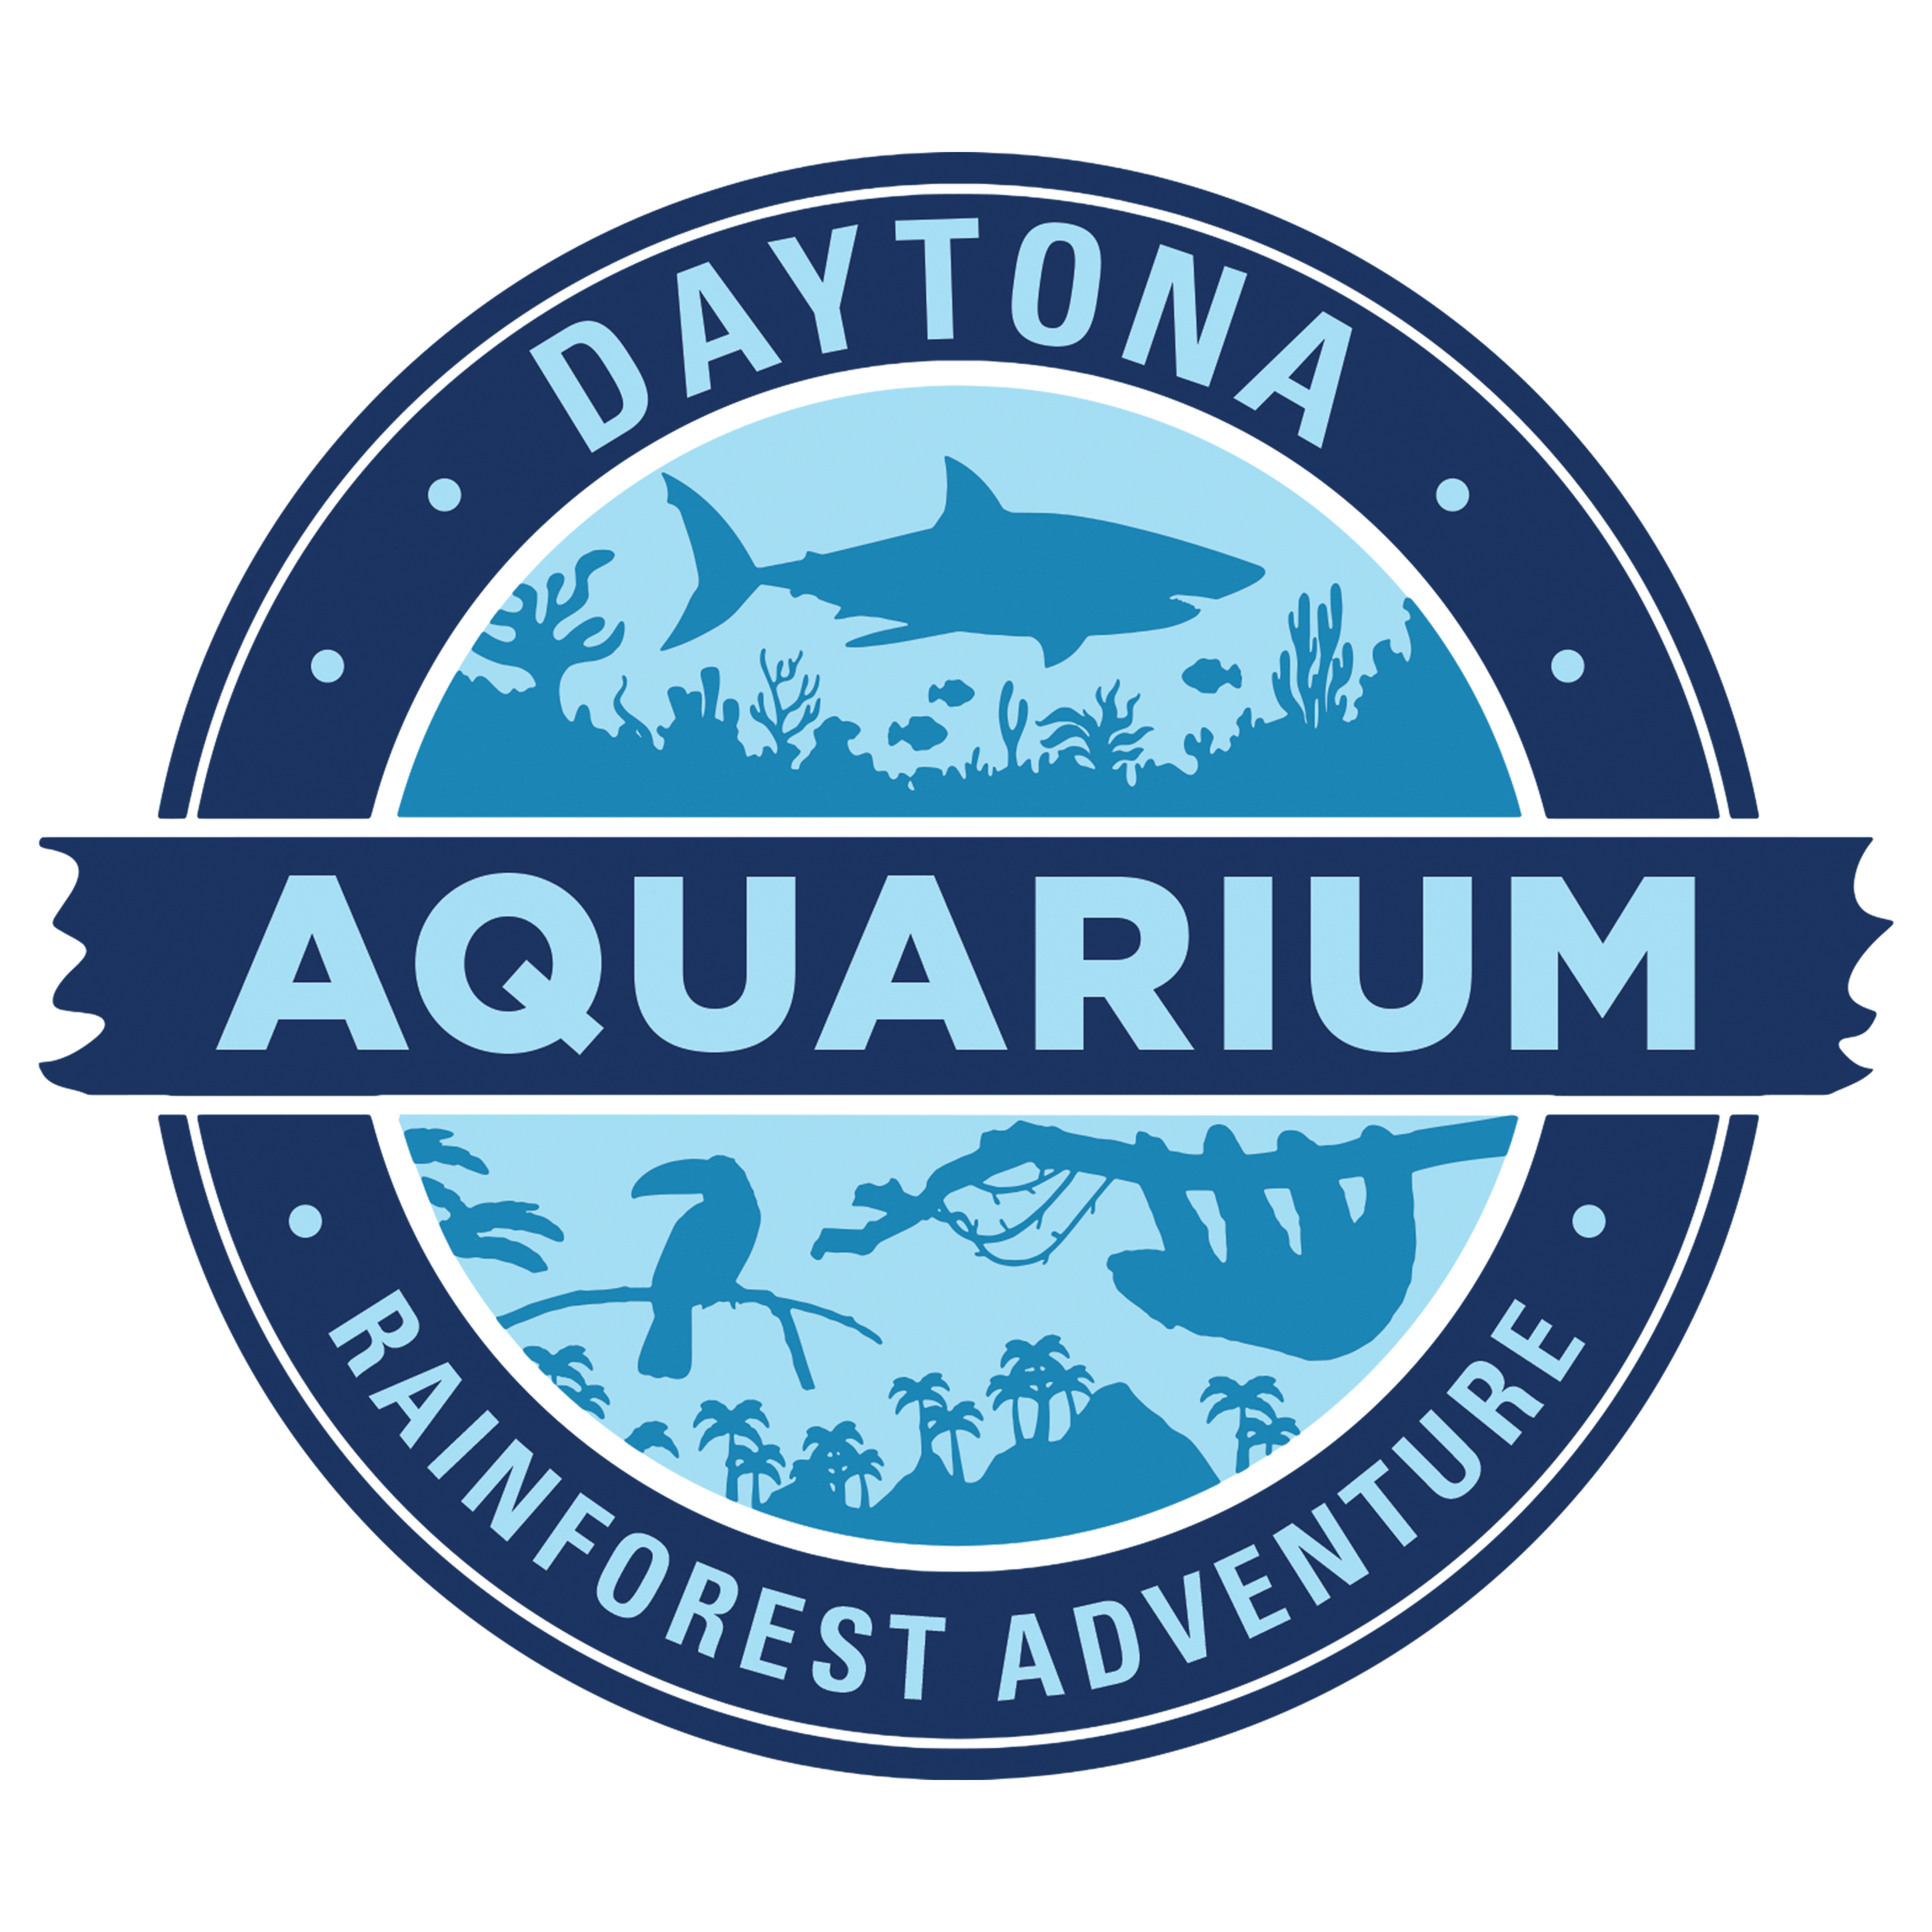 Daytona Aquarium and Rainforest Adventure 